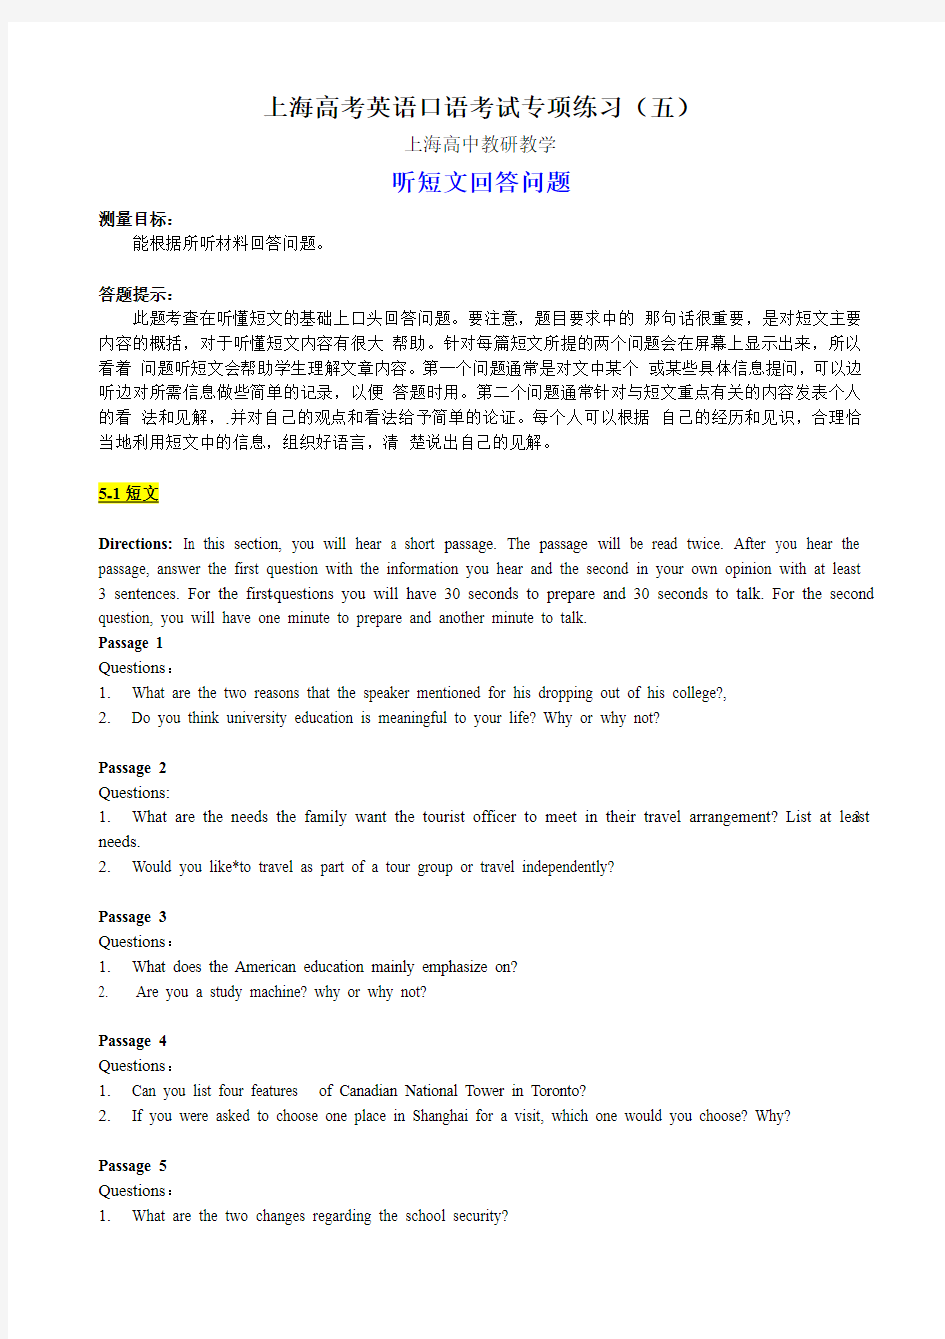 上海高考英语口语考试专项练习(五)听短文回答问题